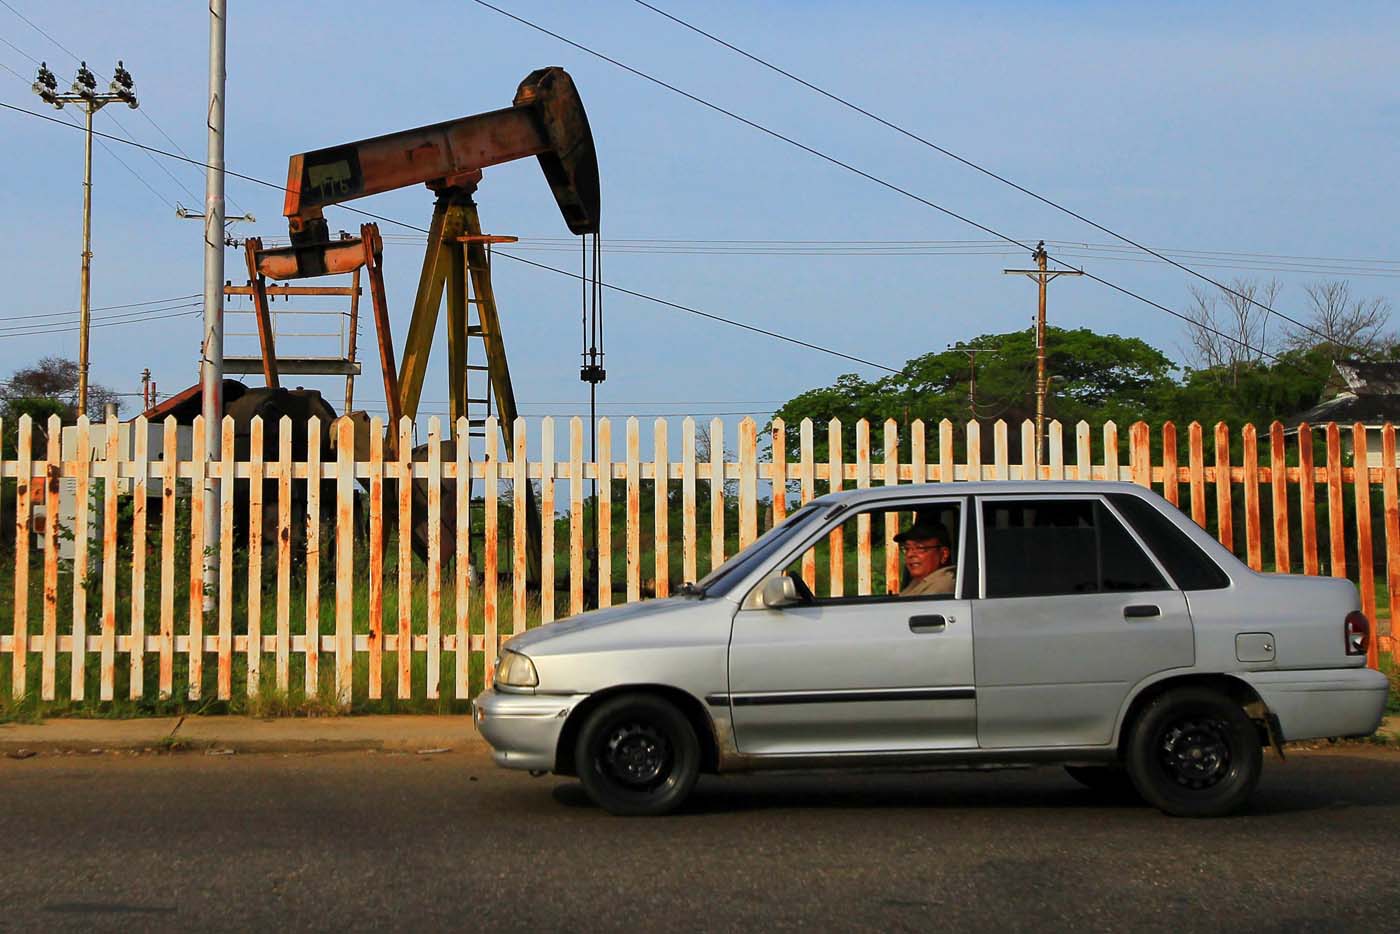 En julio, la producción de petróleo de Venezuela cayó 26 mbd, según la Opep